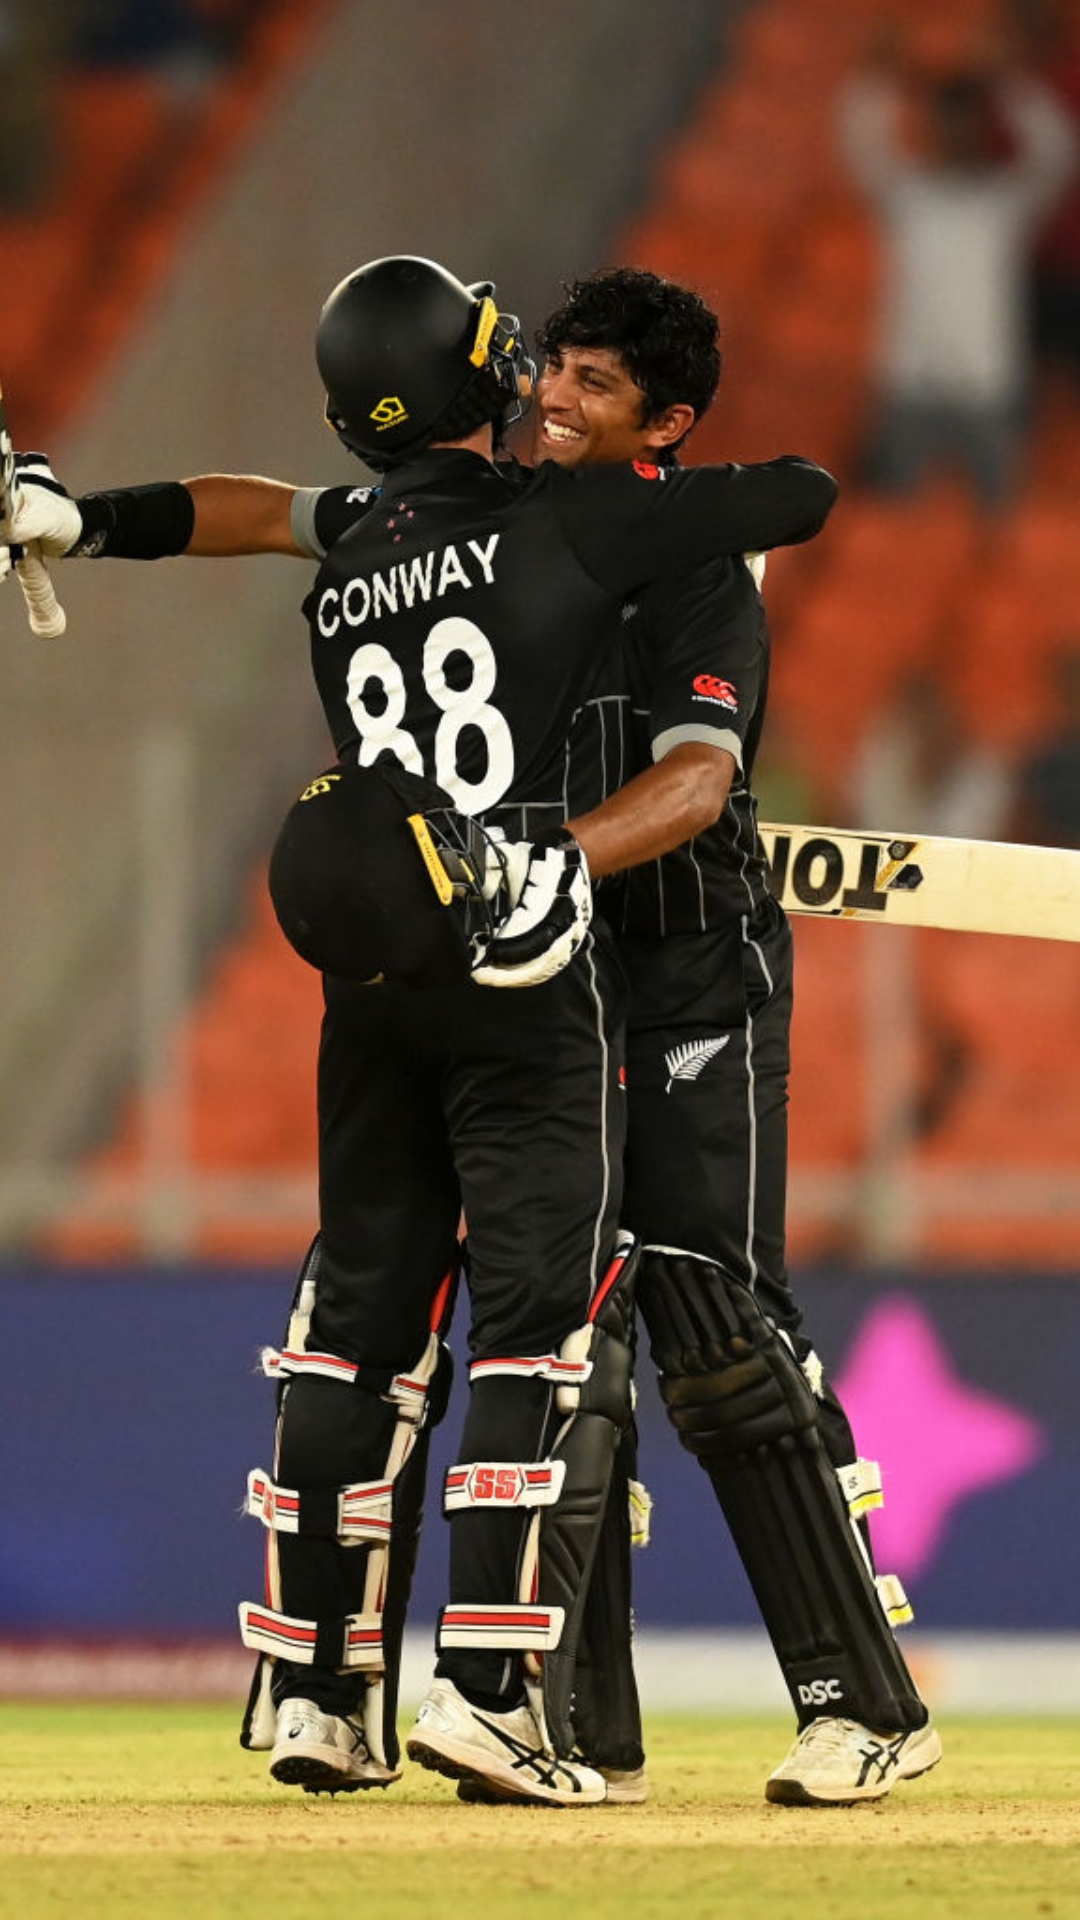 वनडे वर्ल्ड कप के सबसे पहले मैच में सेंचुरी लगाने वाले टॉप बल्लेबाज, लिस्ट में 2 भारतीय